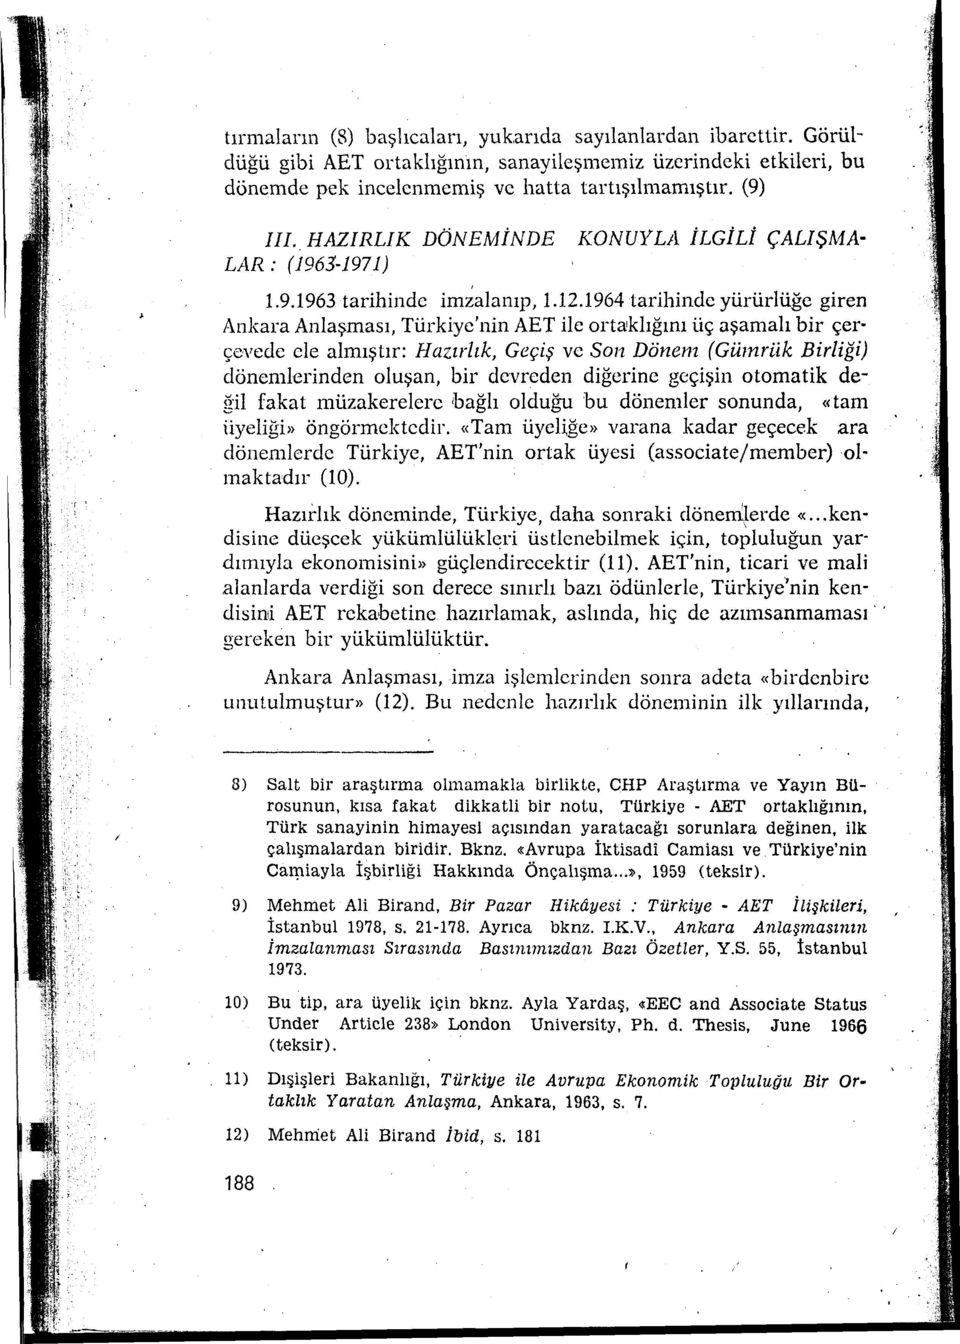 1964 tarihinde yürürlüğe giren Ankara Anlaşması, Türkiye'nin AET ilc ortaklığını üç aşamalı bir çer çevedc ele almıştır: Hazırlık, Geçiş ve Son Dönem (Gümrük Birliği) dönenılerinden oluşan, bir